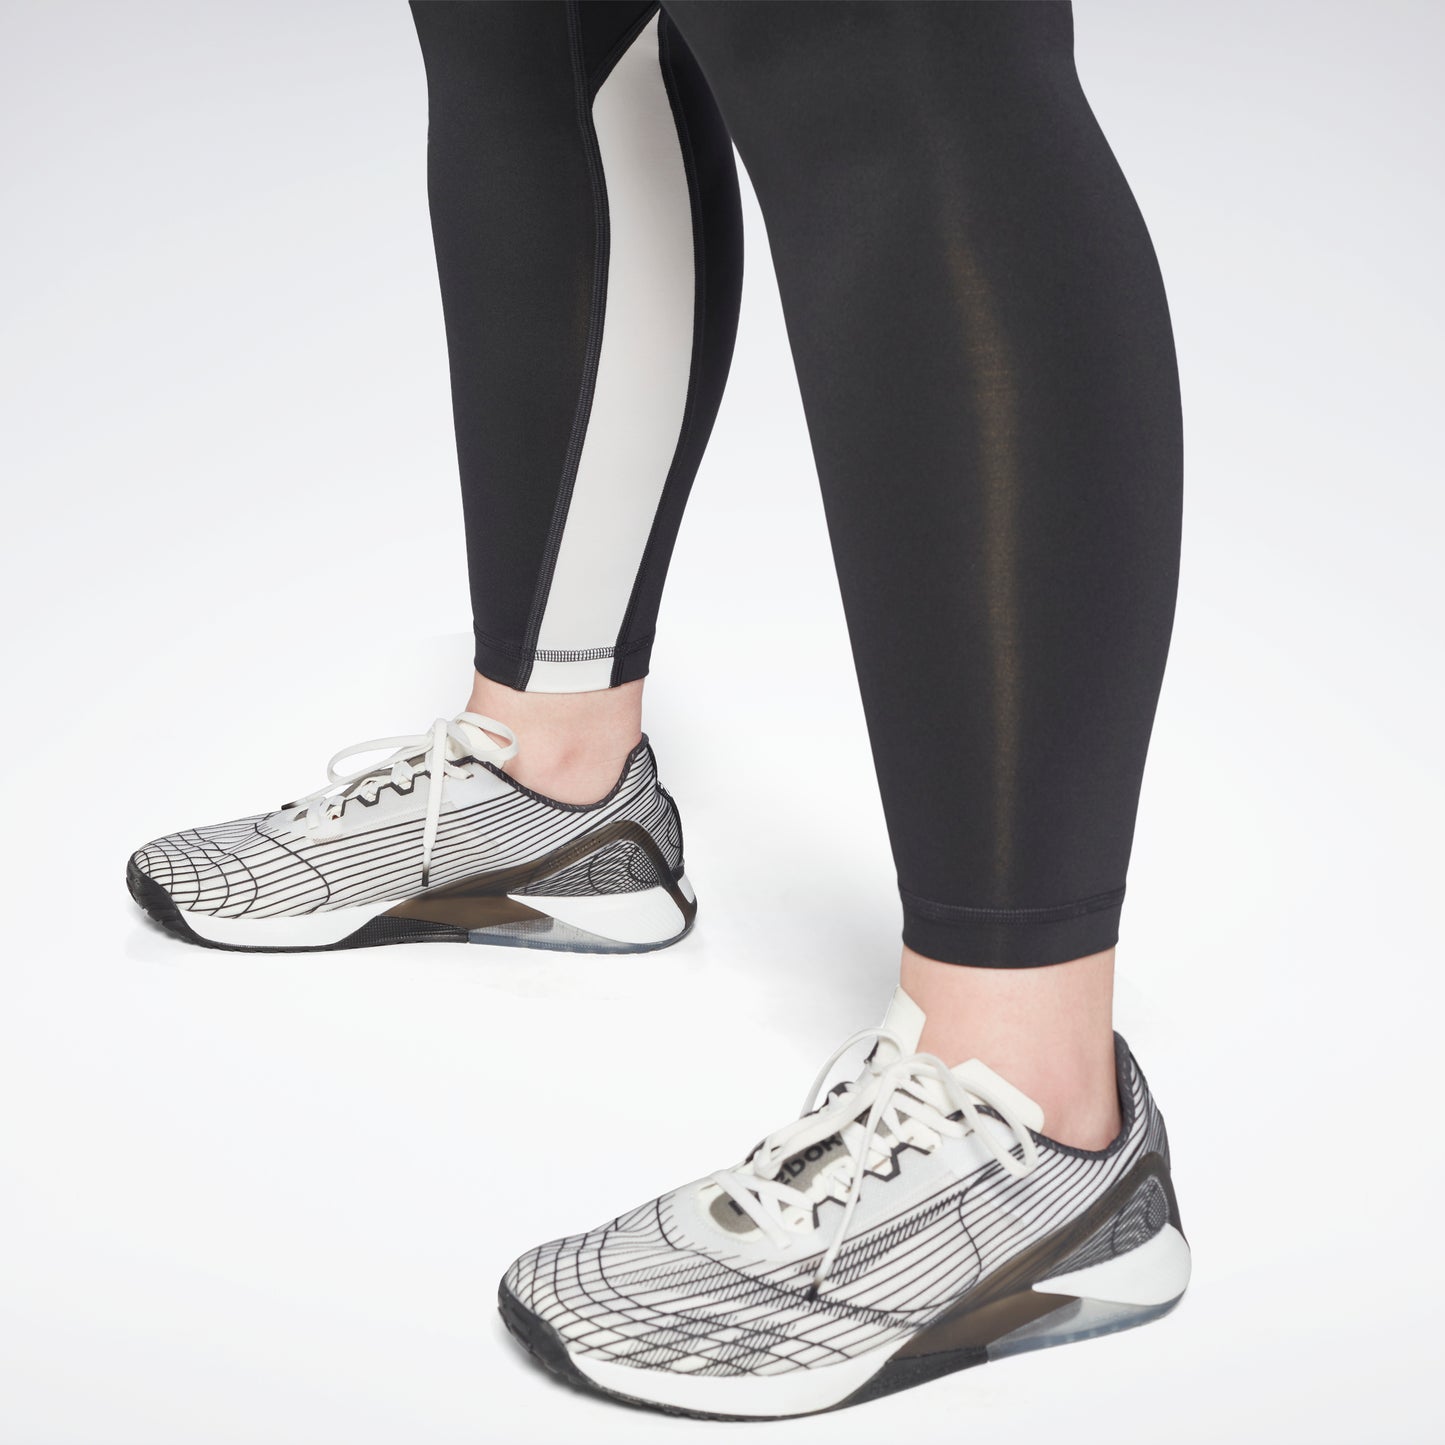 Ladies Pocket Leggings - reg - plus - plus/plus sizes! – Design Blanks